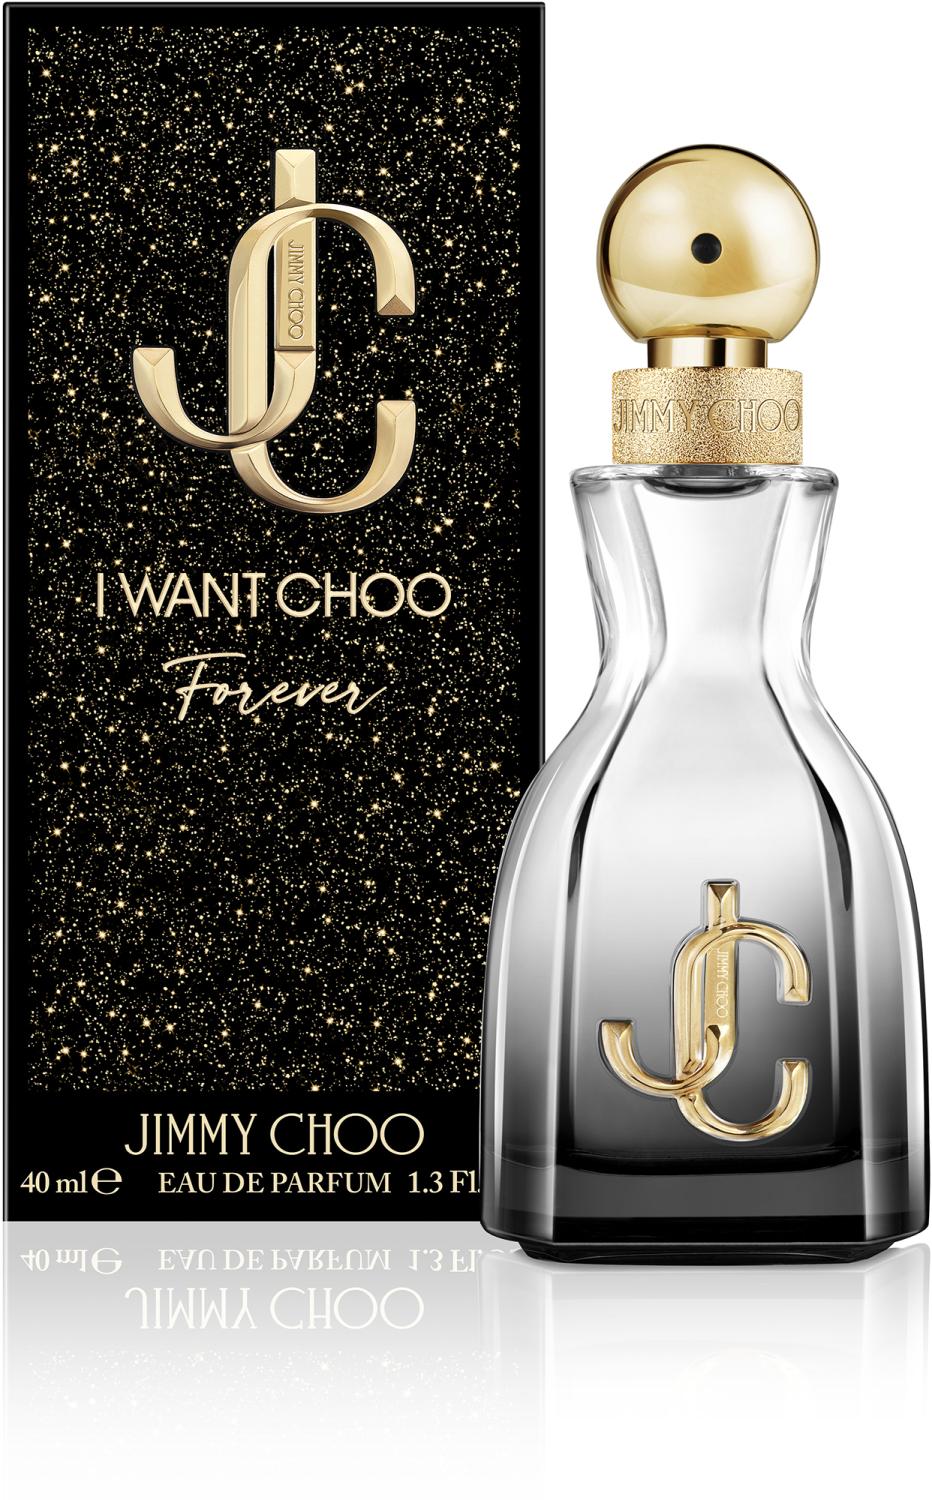 Jimmy Choo I Want Choo Forever 40 ml